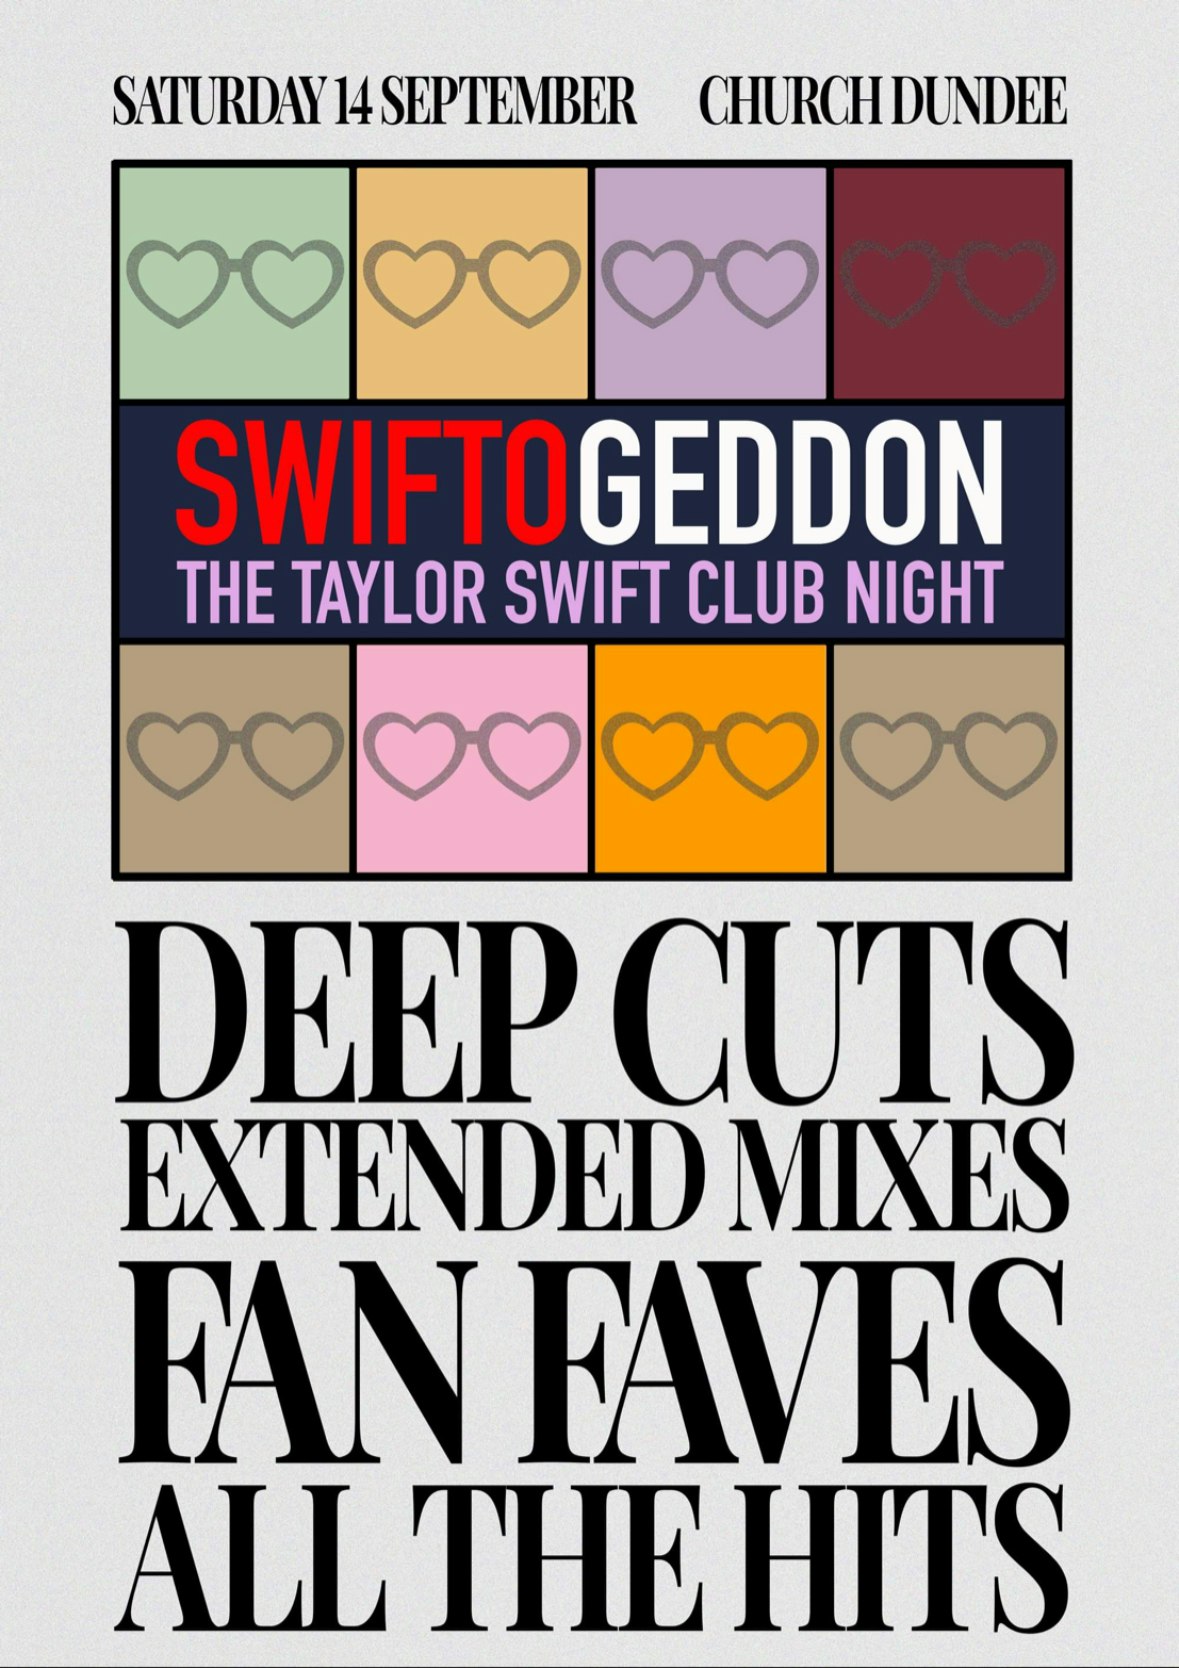 Swiftogeddon Club Night